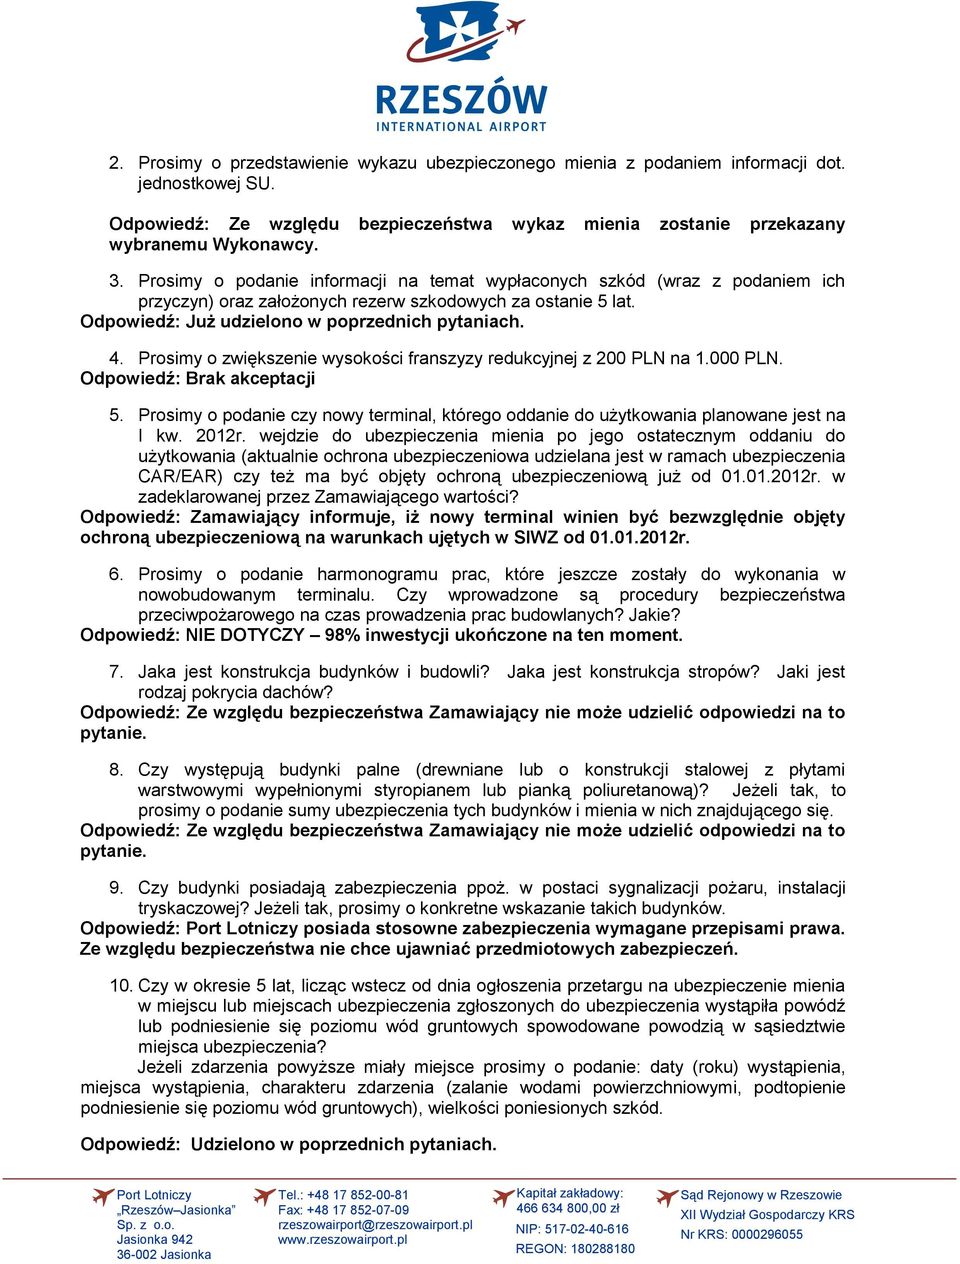 Prosimy o zwiększenie wysokości franszyzy redukcyjnej z 200 PLN na 1.000 PLN. 5. Prosimy o podanie czy nowy terminal, którego oddanie do użytkowania planowane jest na I kw. 2012r.